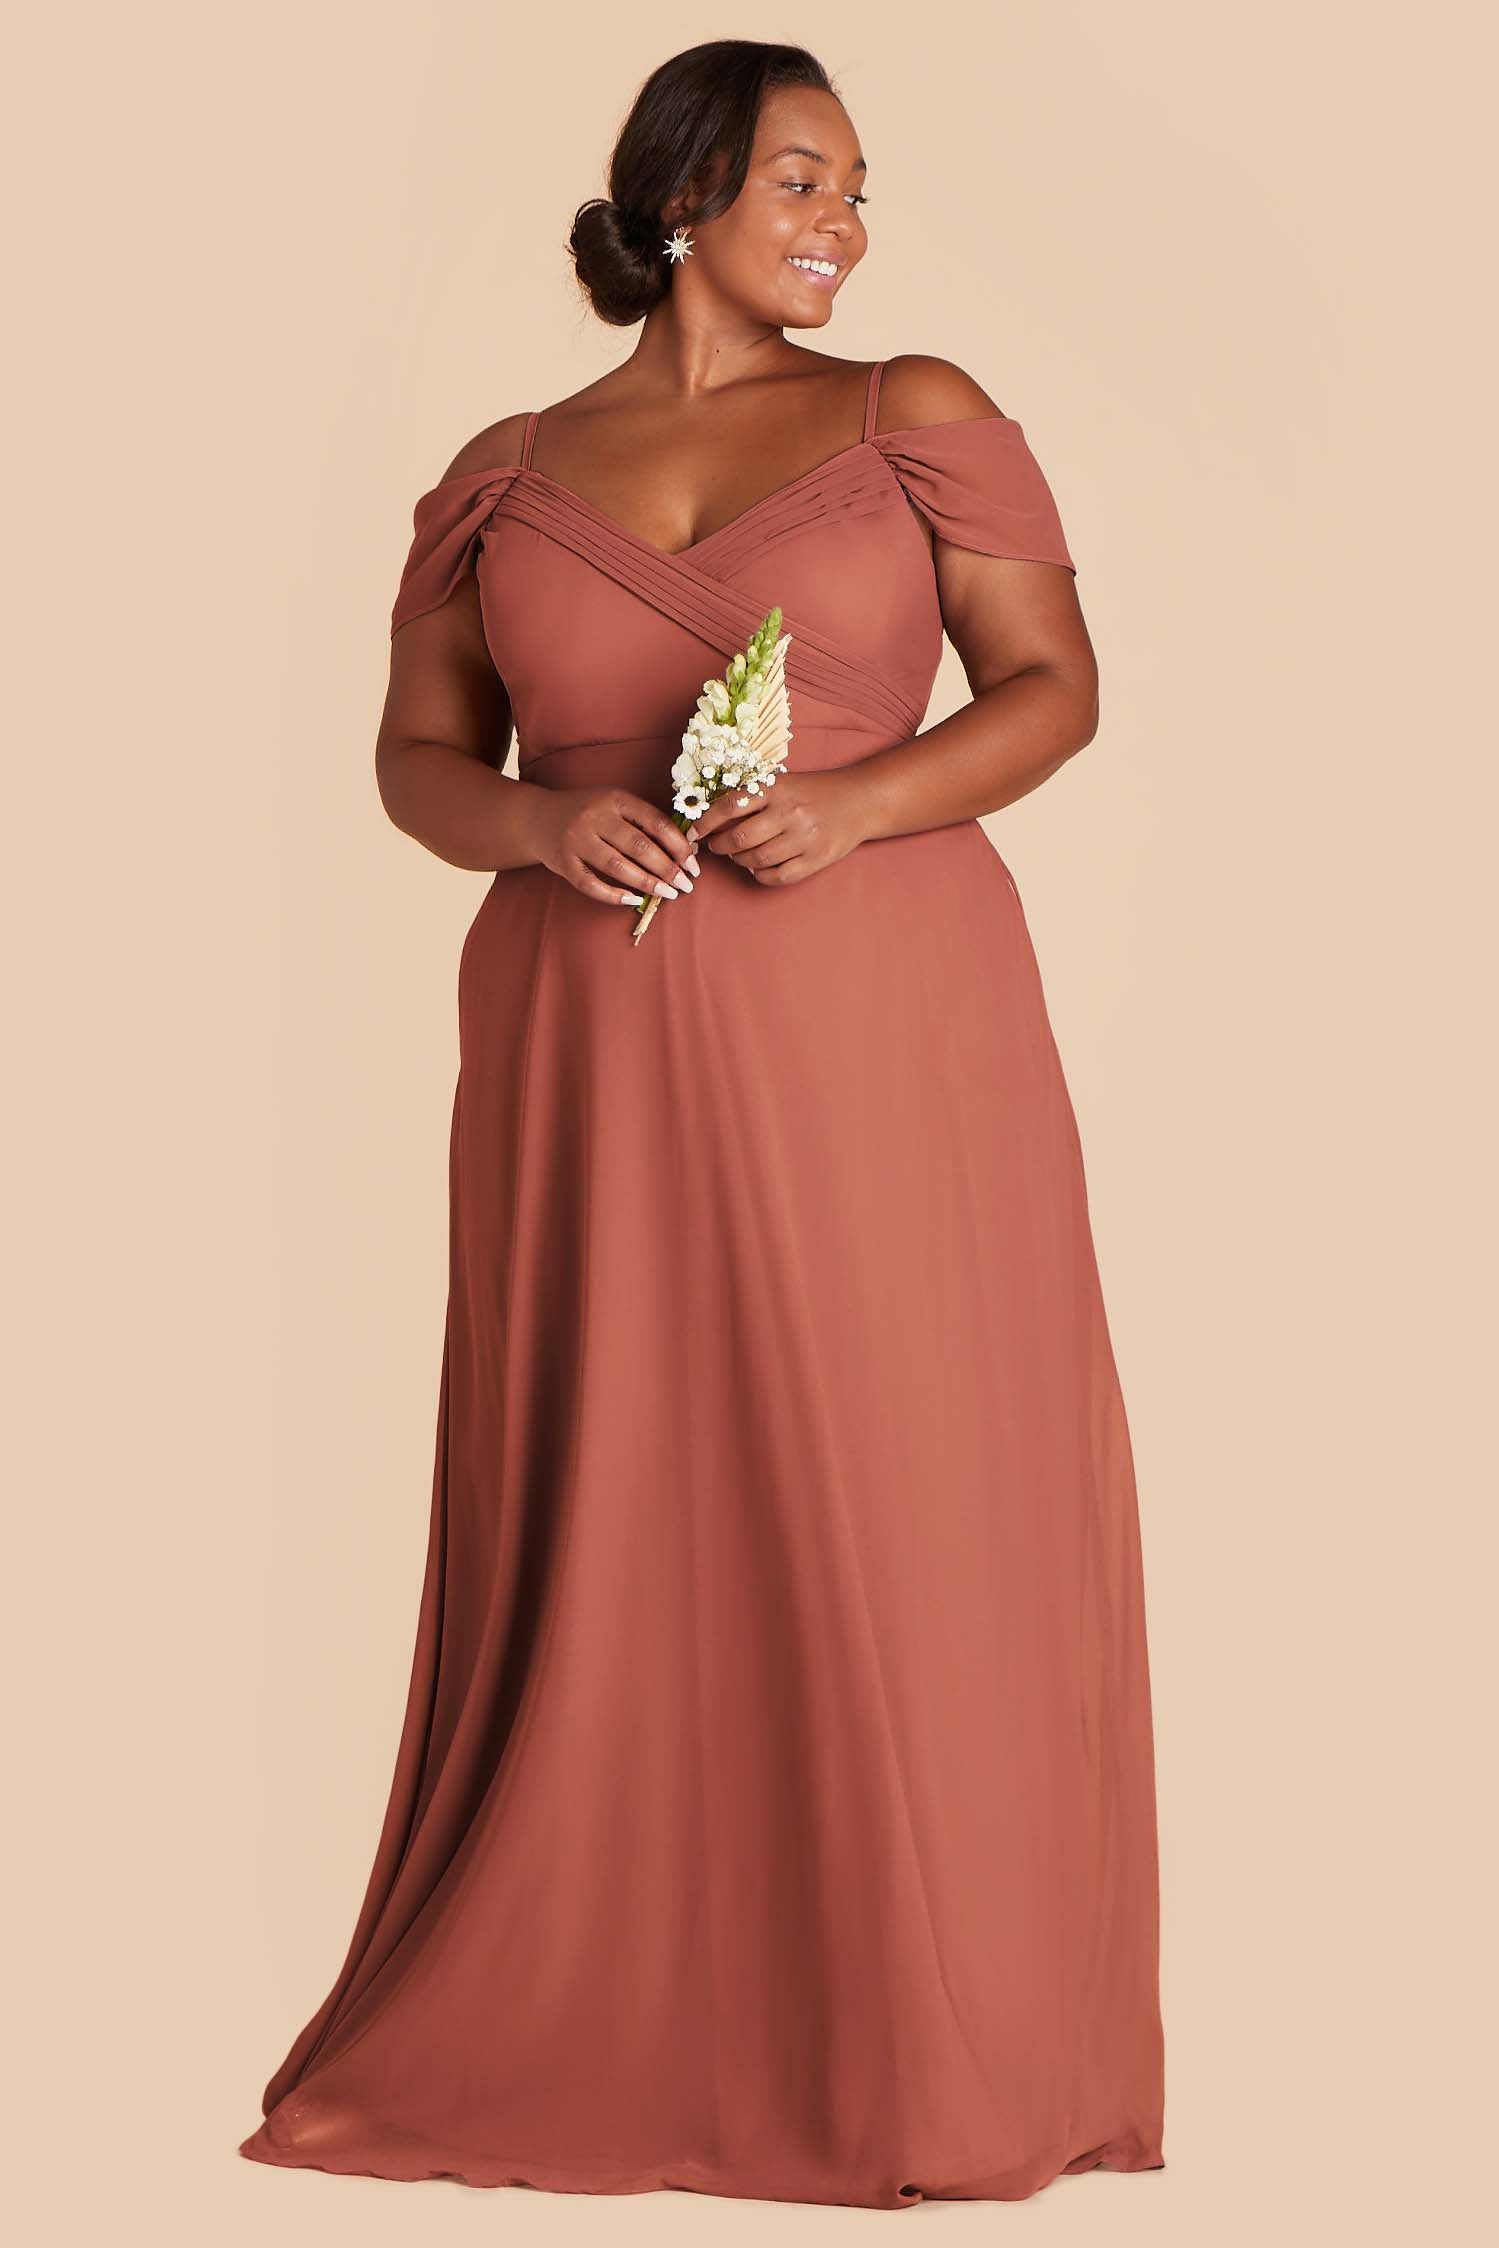 Spence Convertible Dress - Desert Rose